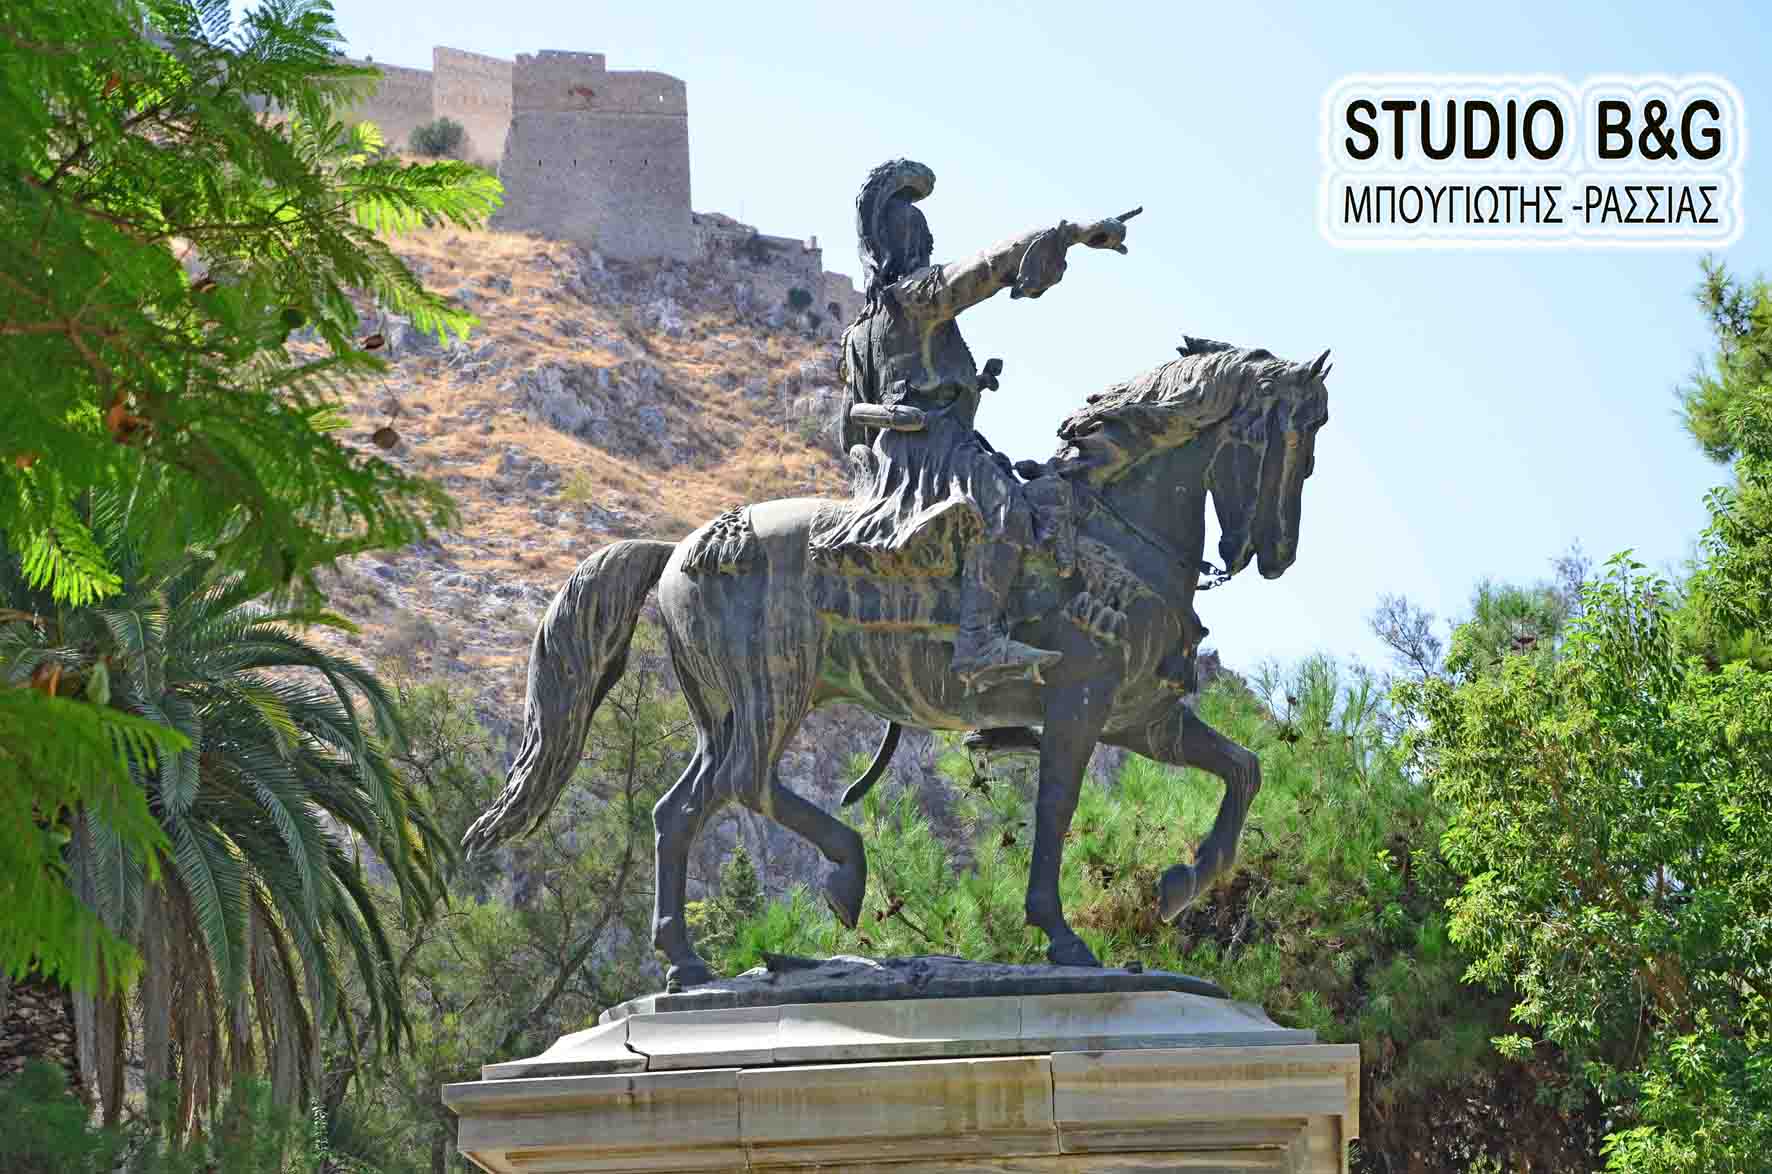 Αν δεν συντηρηθεί, θα πέσει το άγαλμα του Κολοκοτρώνη στο Ναύπλιο (εικόνες)